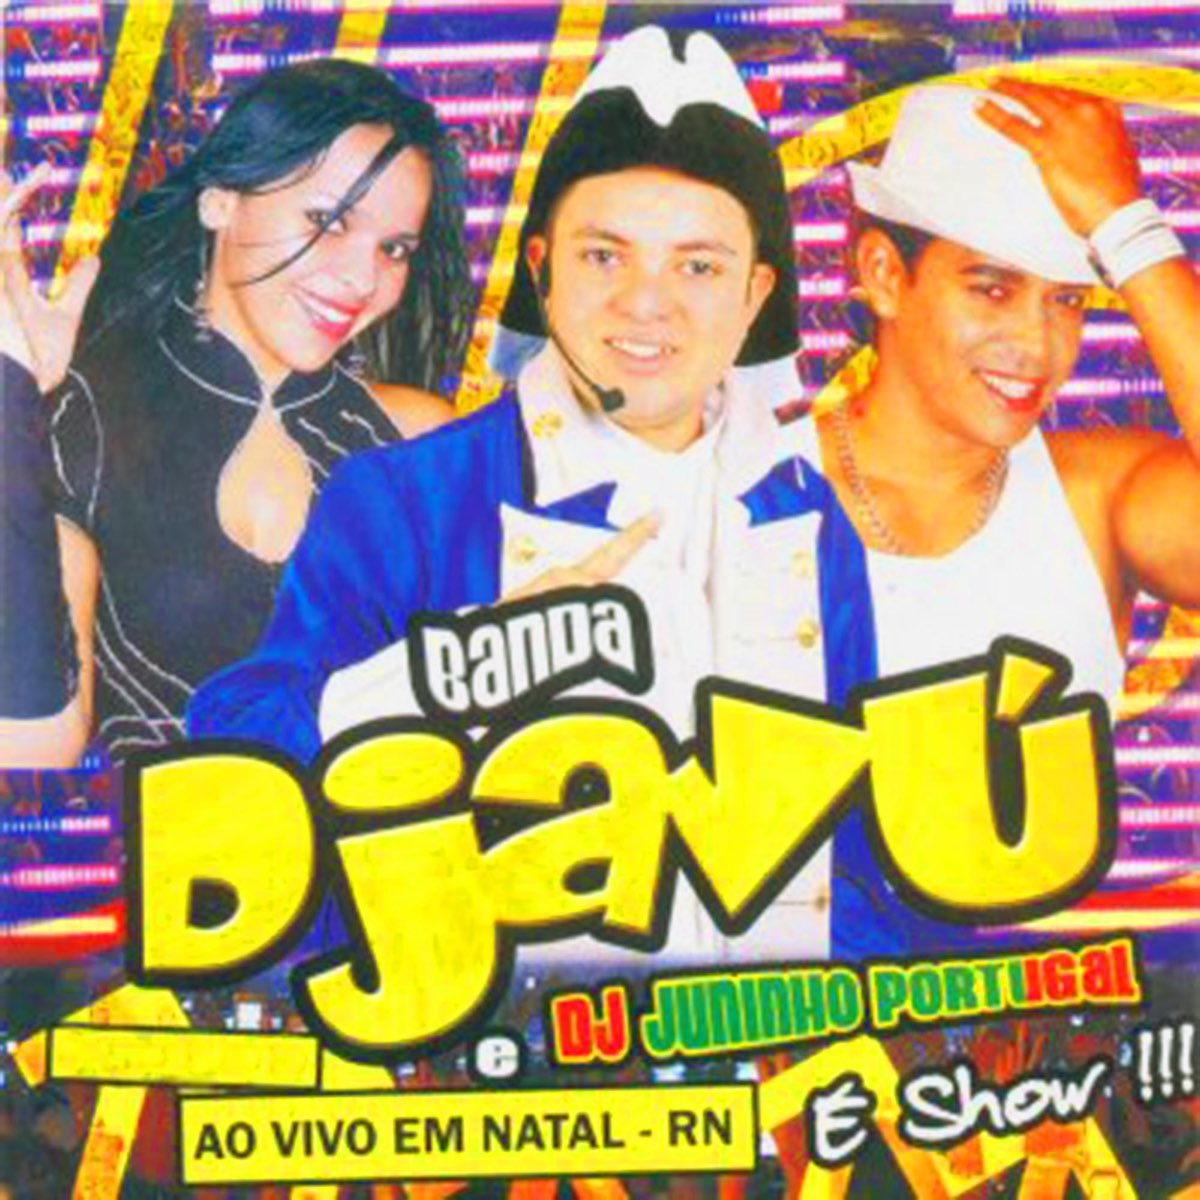 Banda Djavu & Dj Juninho Portugal Ao Vivo em Natal (Ao Vivo) by Banda Djavu  & Dj Juninho on Apple Music